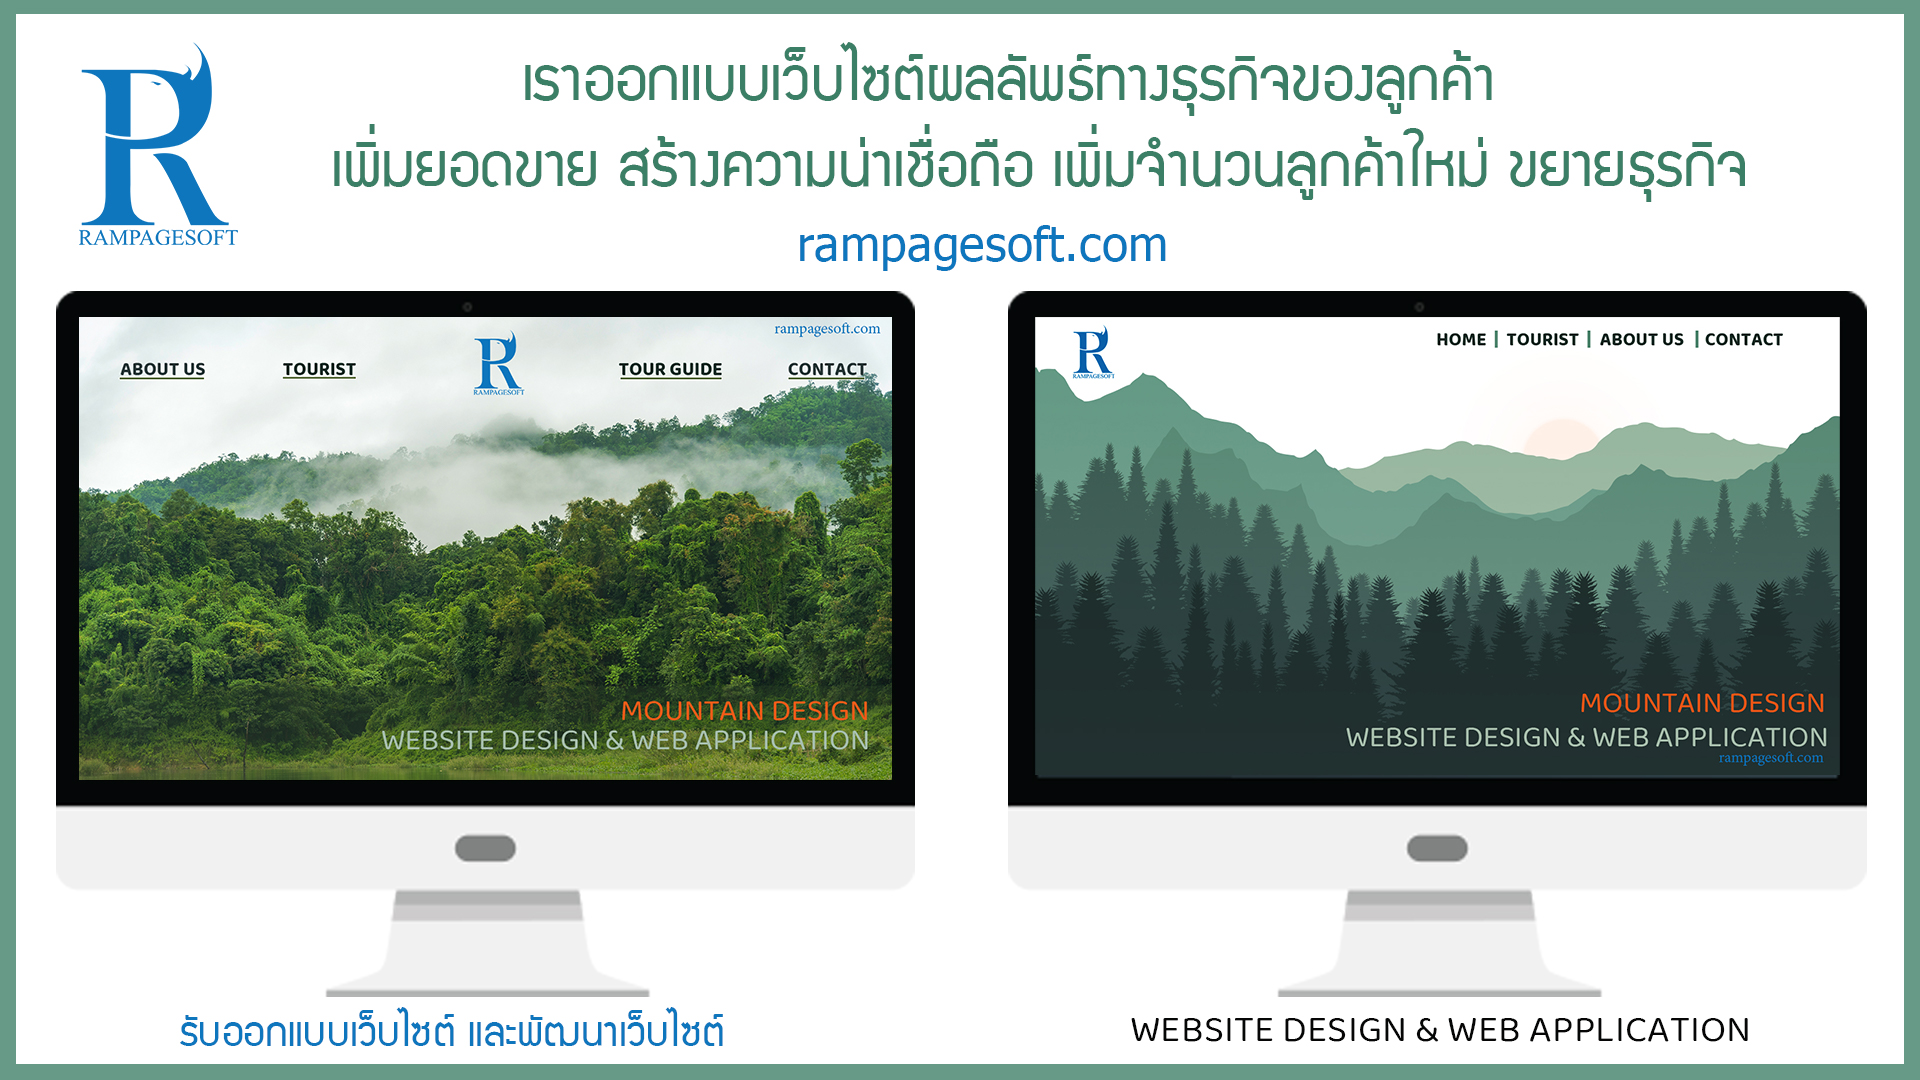 รับทำเว็บไซต์ รับออกแบบเว็บไซต์ นครราชสีมา โคราช เขาใหญ่ rampagesoft